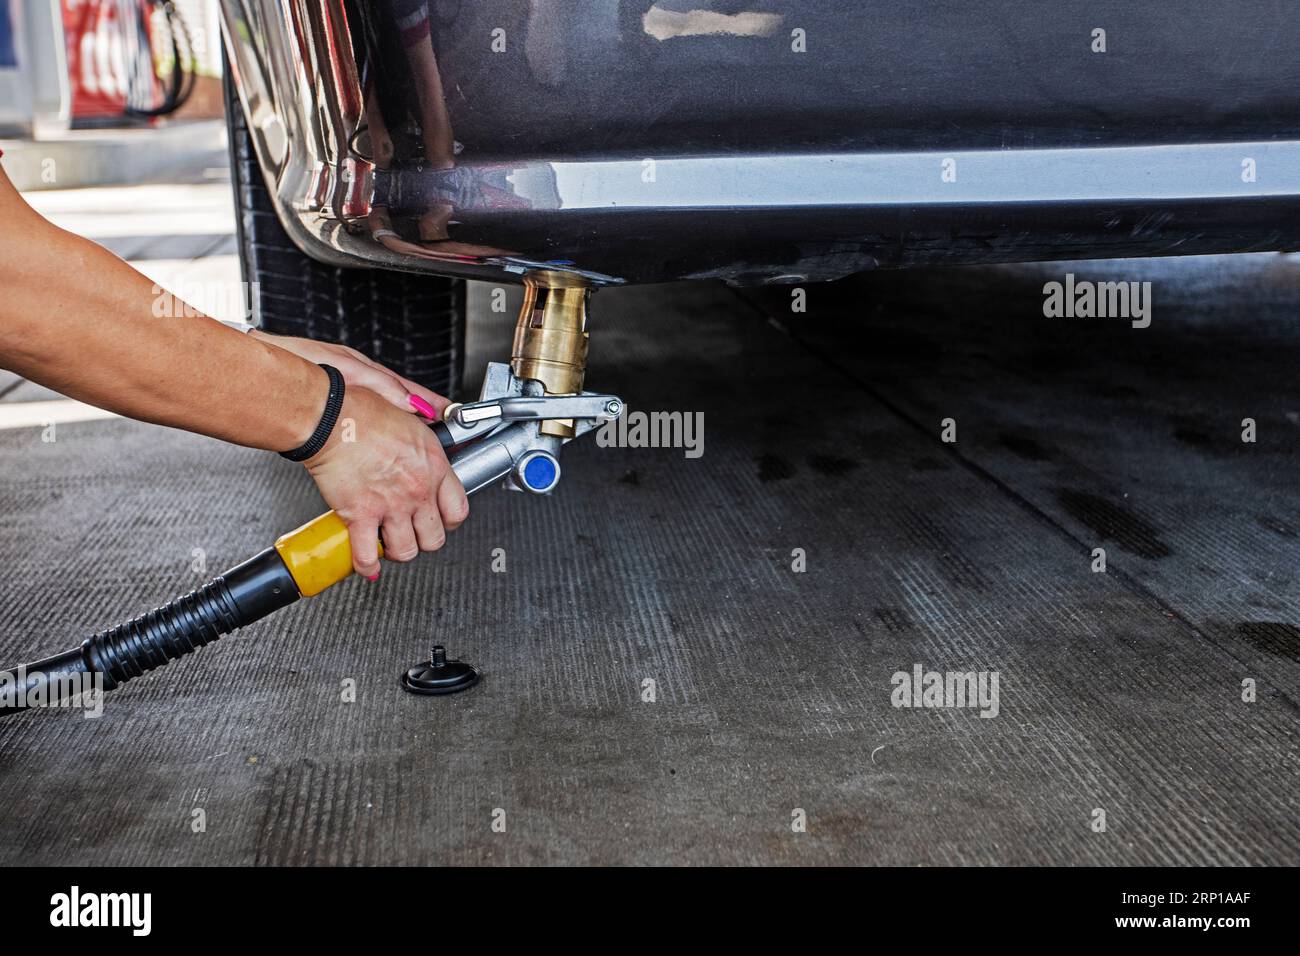 Il personale femminile con le mani ben curate rifornisce una pistola a gas in un'auto da un cliente GPL. L'economia e la crisi mondiale Foto Stock